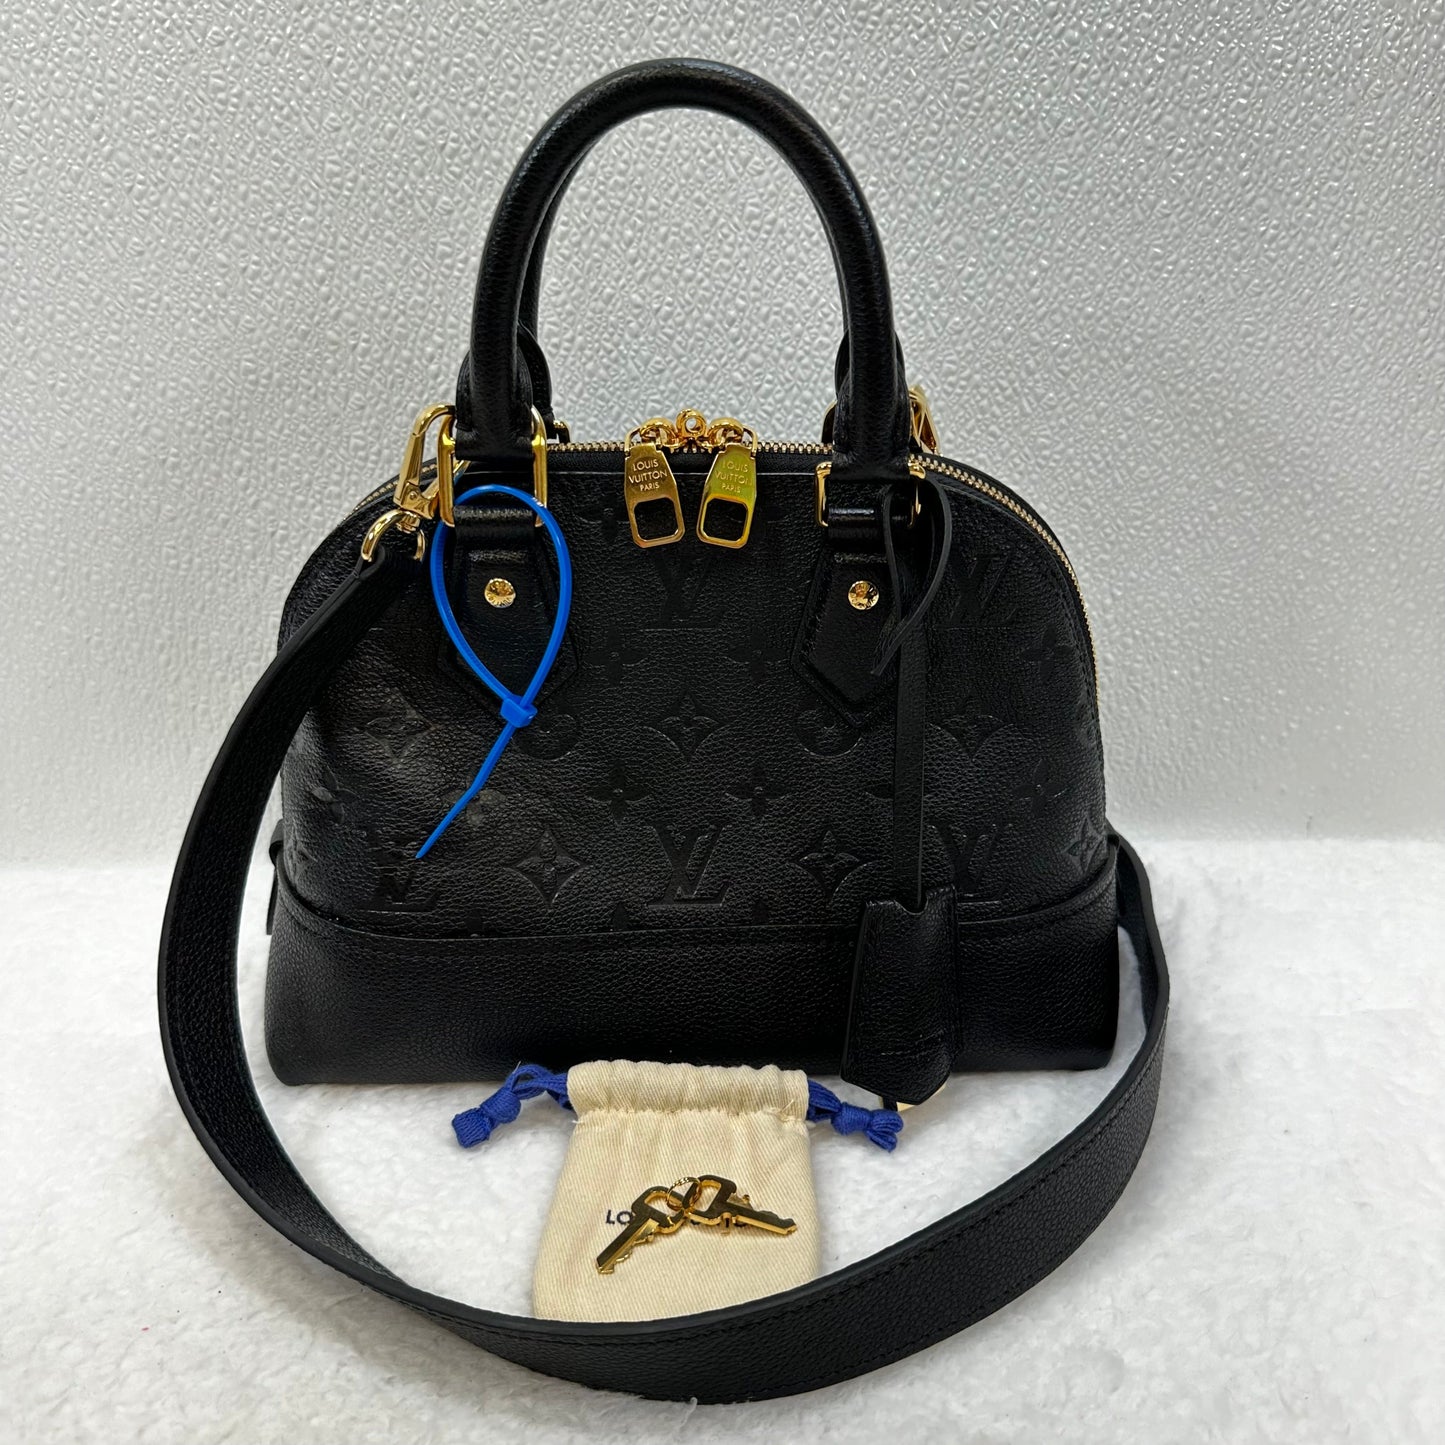 Handbag Designer Louis Vuitton, Size Small